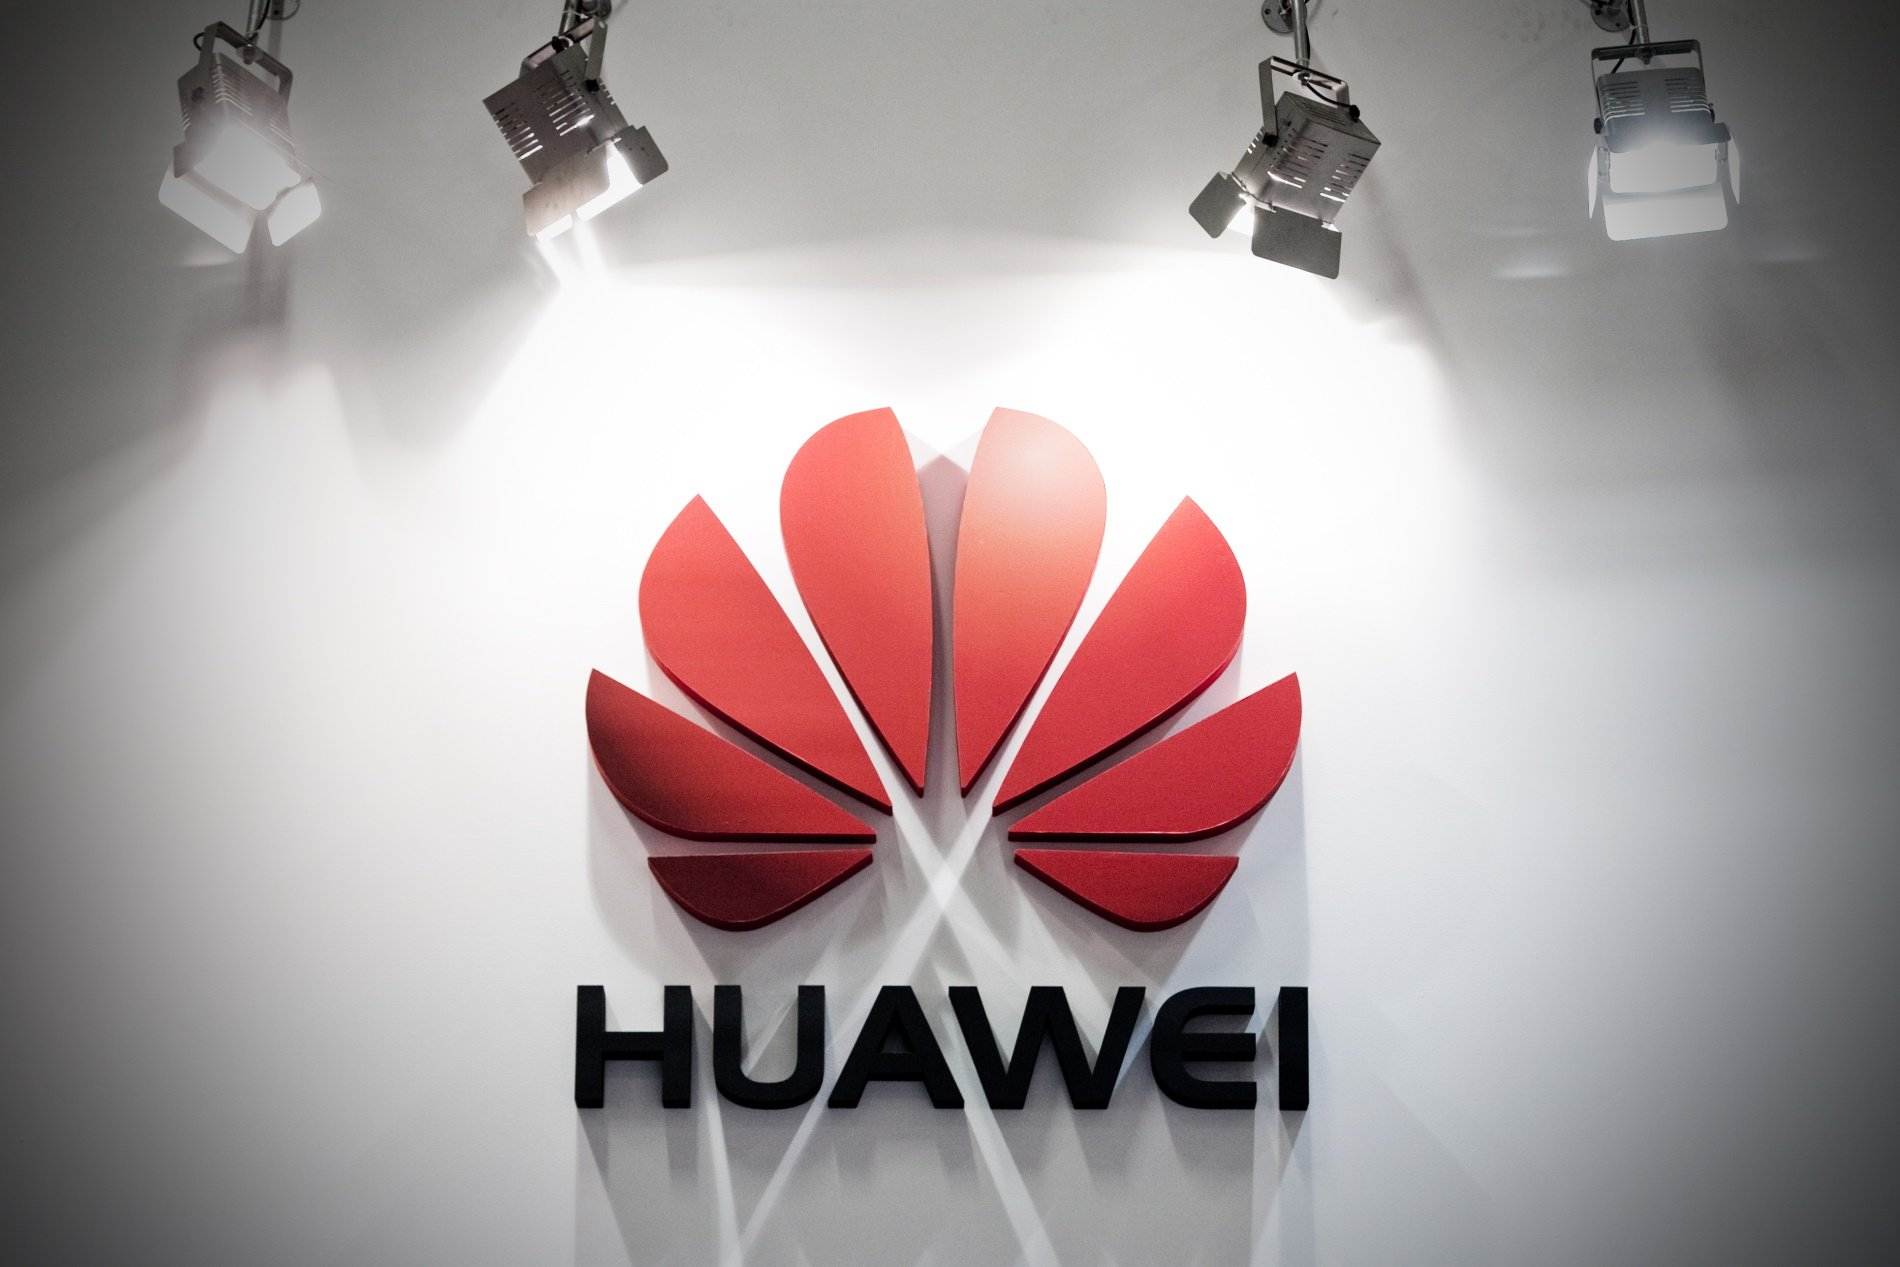 Huawei firma dos acords globals de patents amb Vivo i Amazon